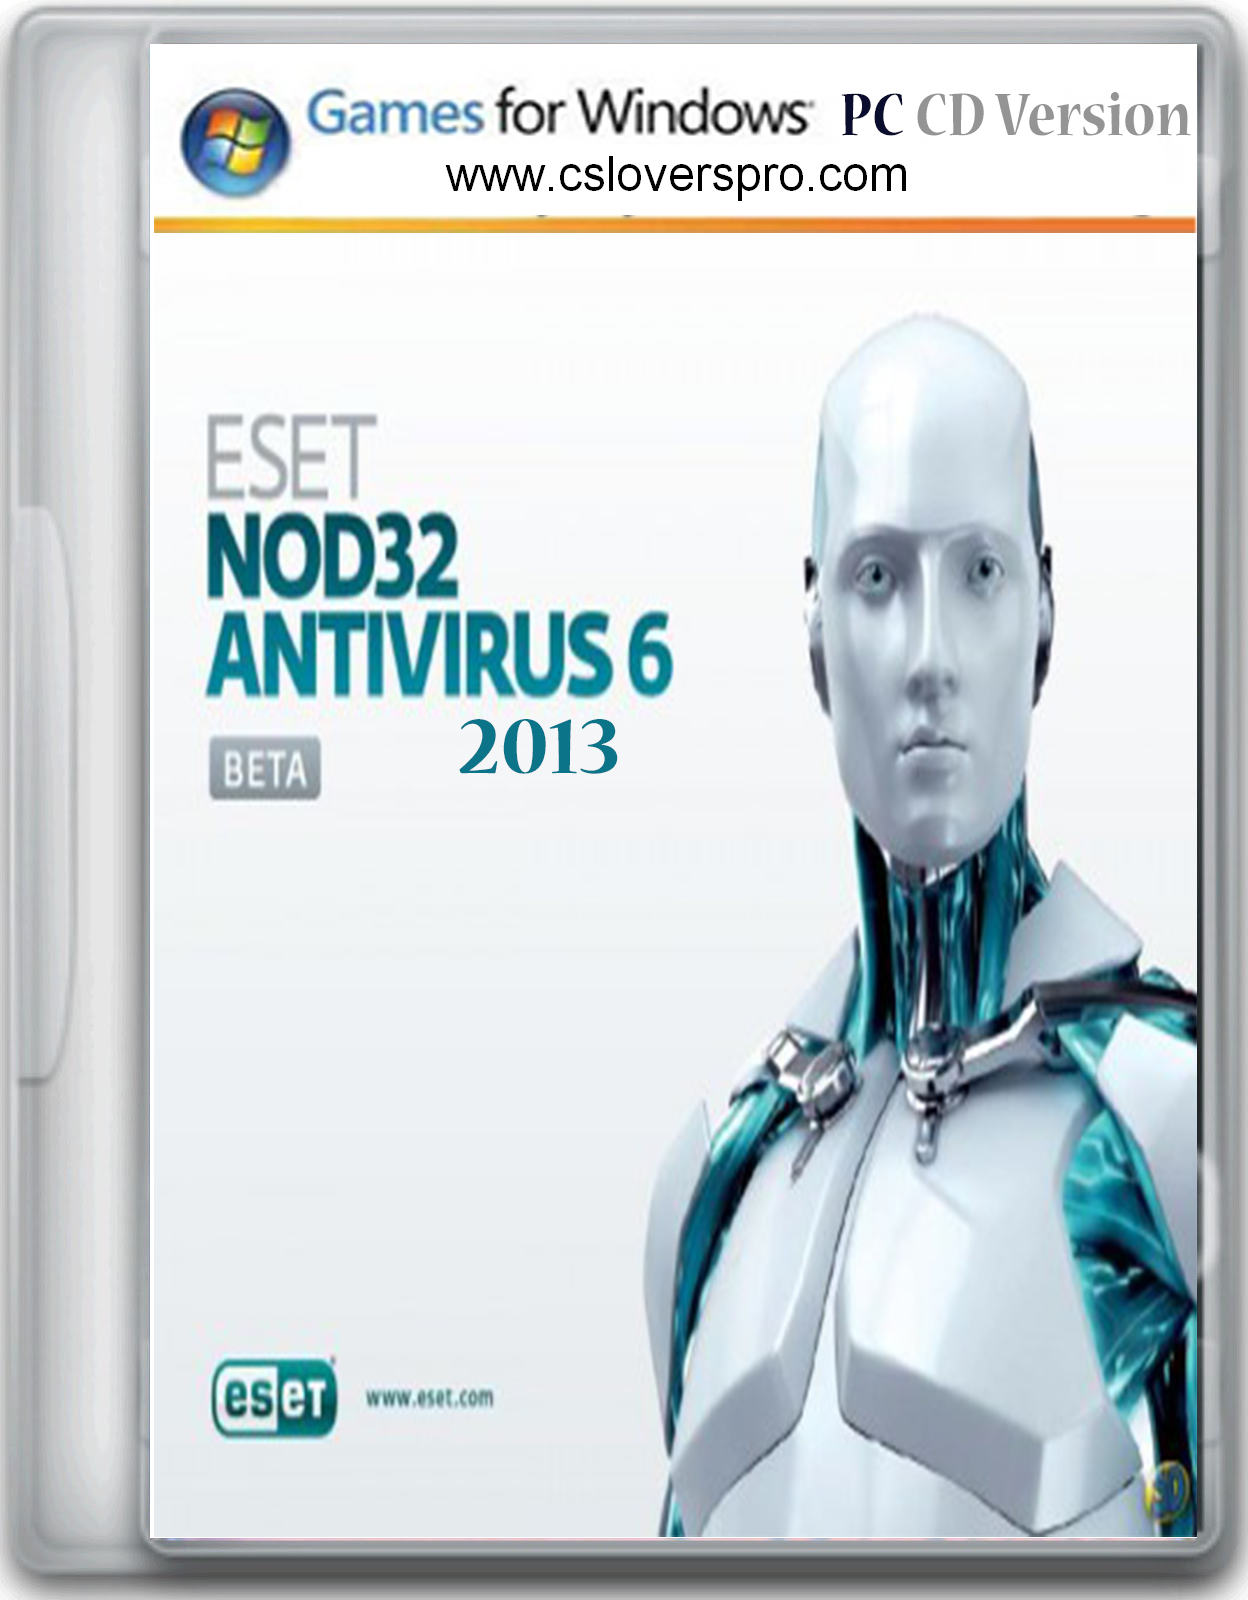 Eset nod32 Antivirus 6 Registered for lifetime Full Version Free